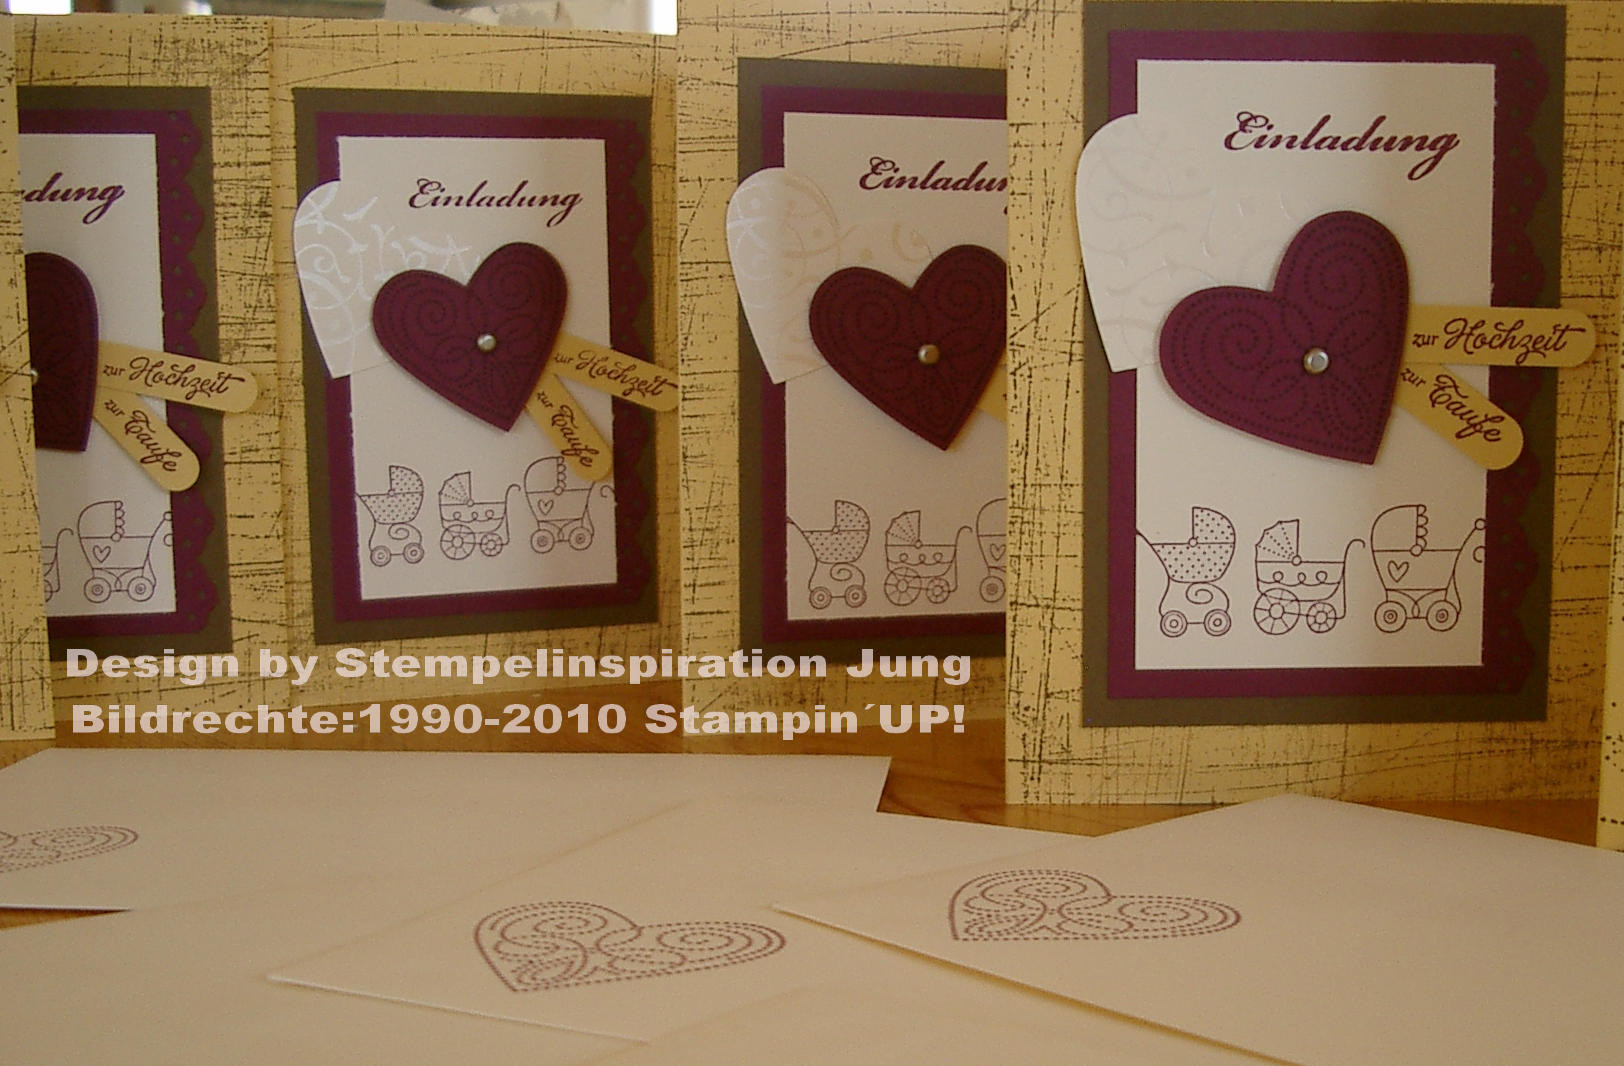 Einladungskarten Hochzeit Gestalten
 Einladungskarten Stempel Inspiration Jung